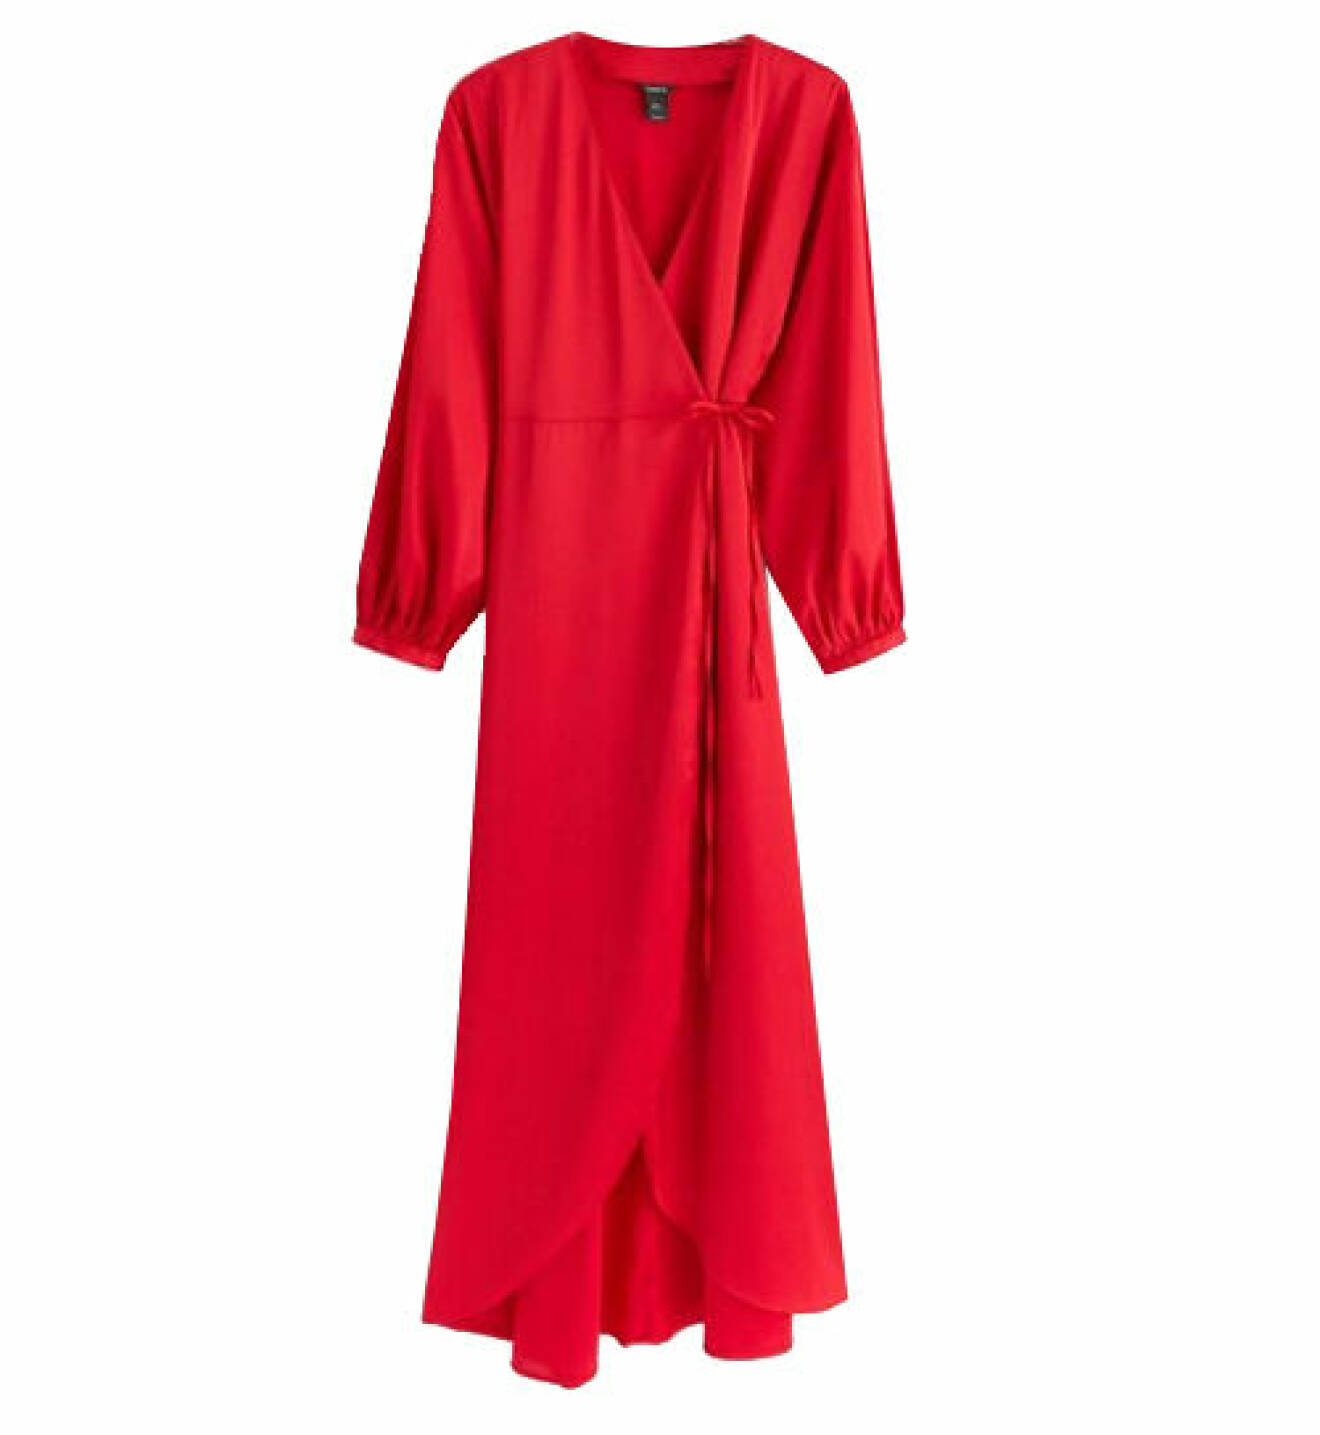 Röd omlottklänning i satin från Lindex